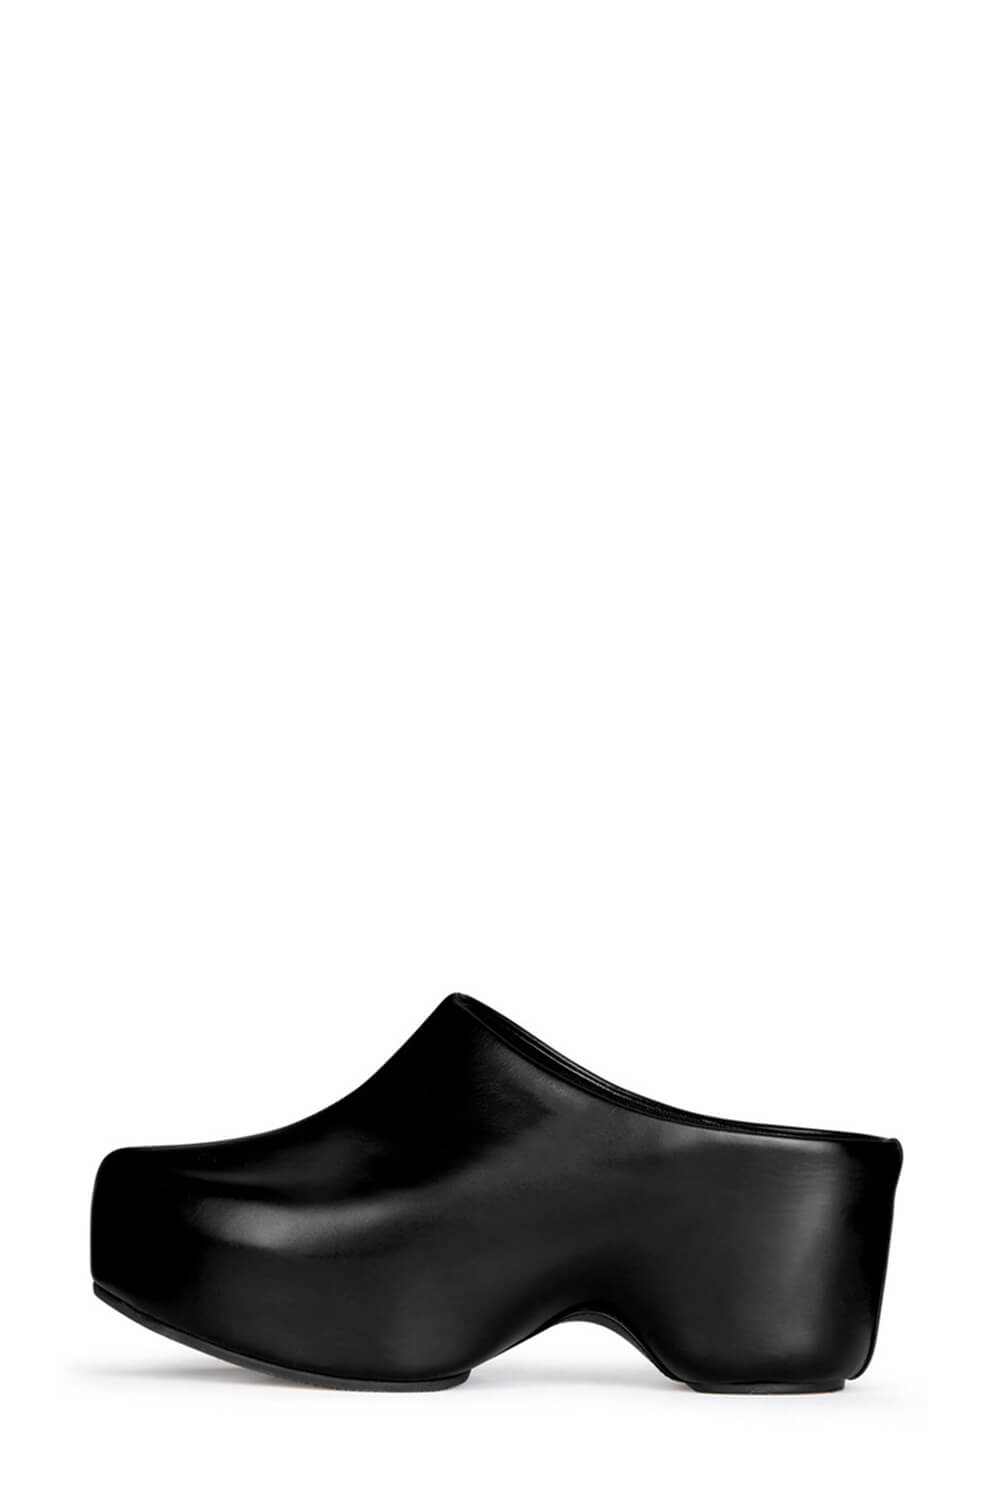 Faux Leather Sling Back Slip On Curved Platform Clogs - Black